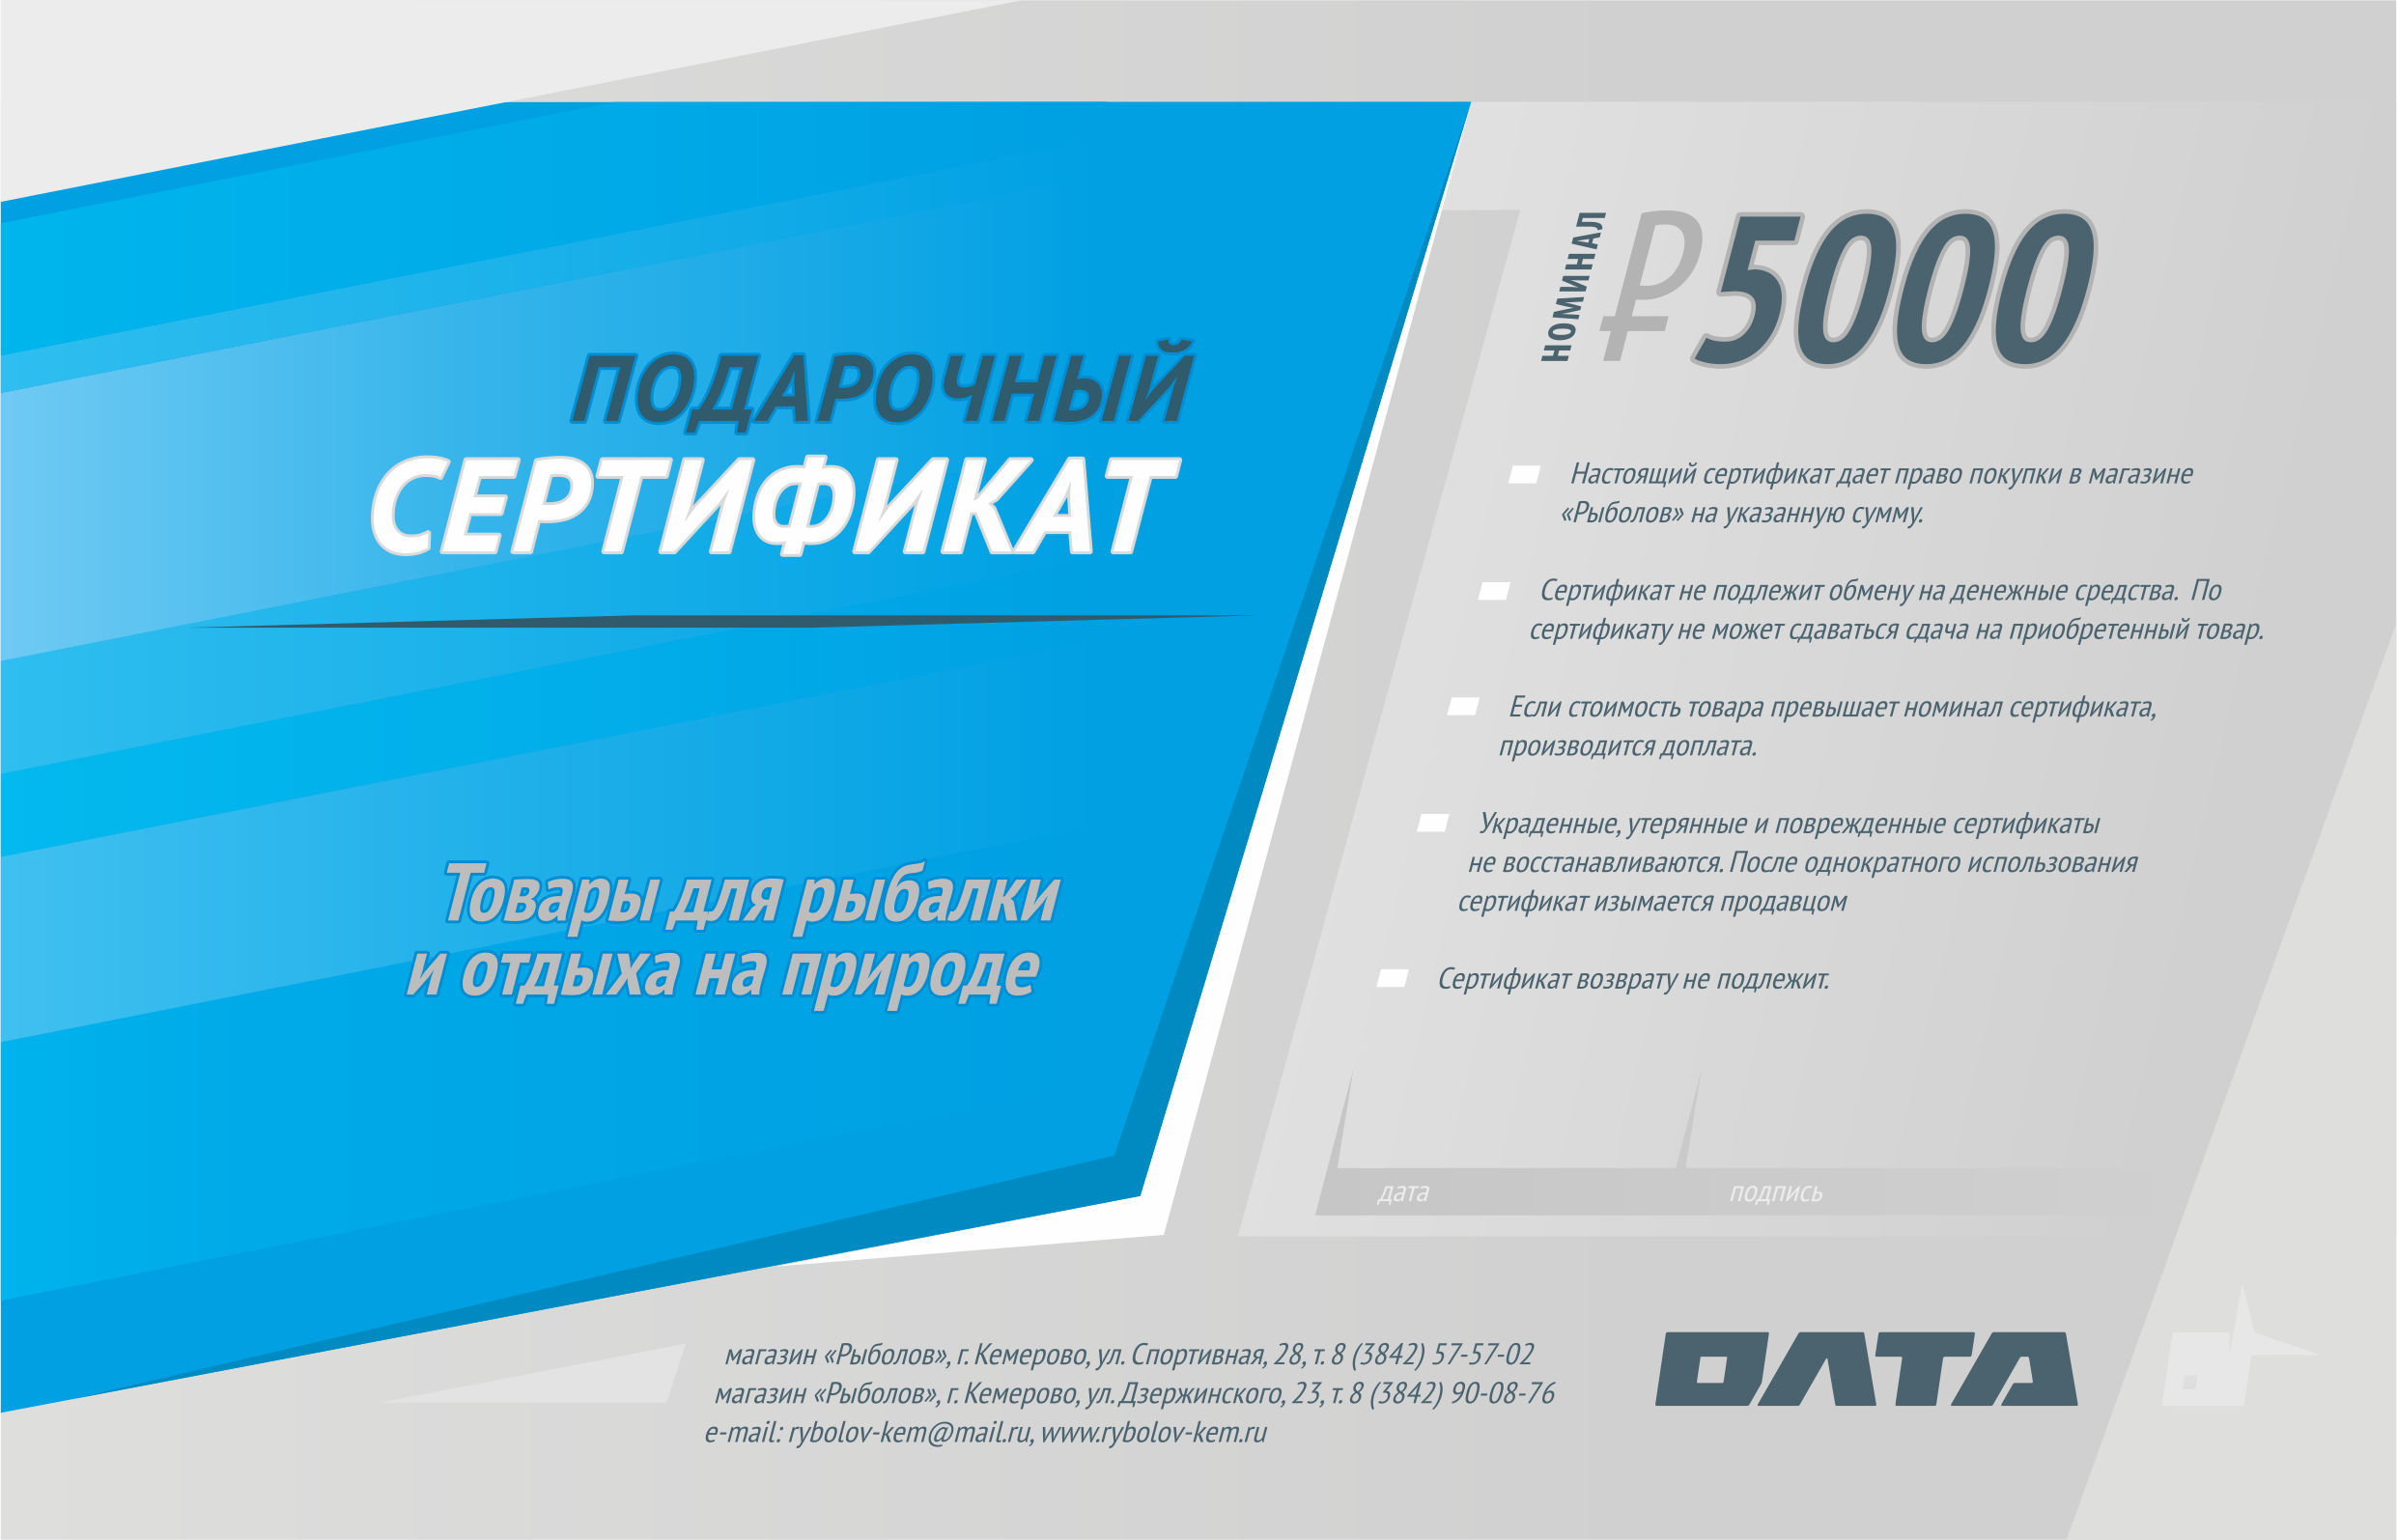 Подарочный сертификат, номинал 5000 рублей